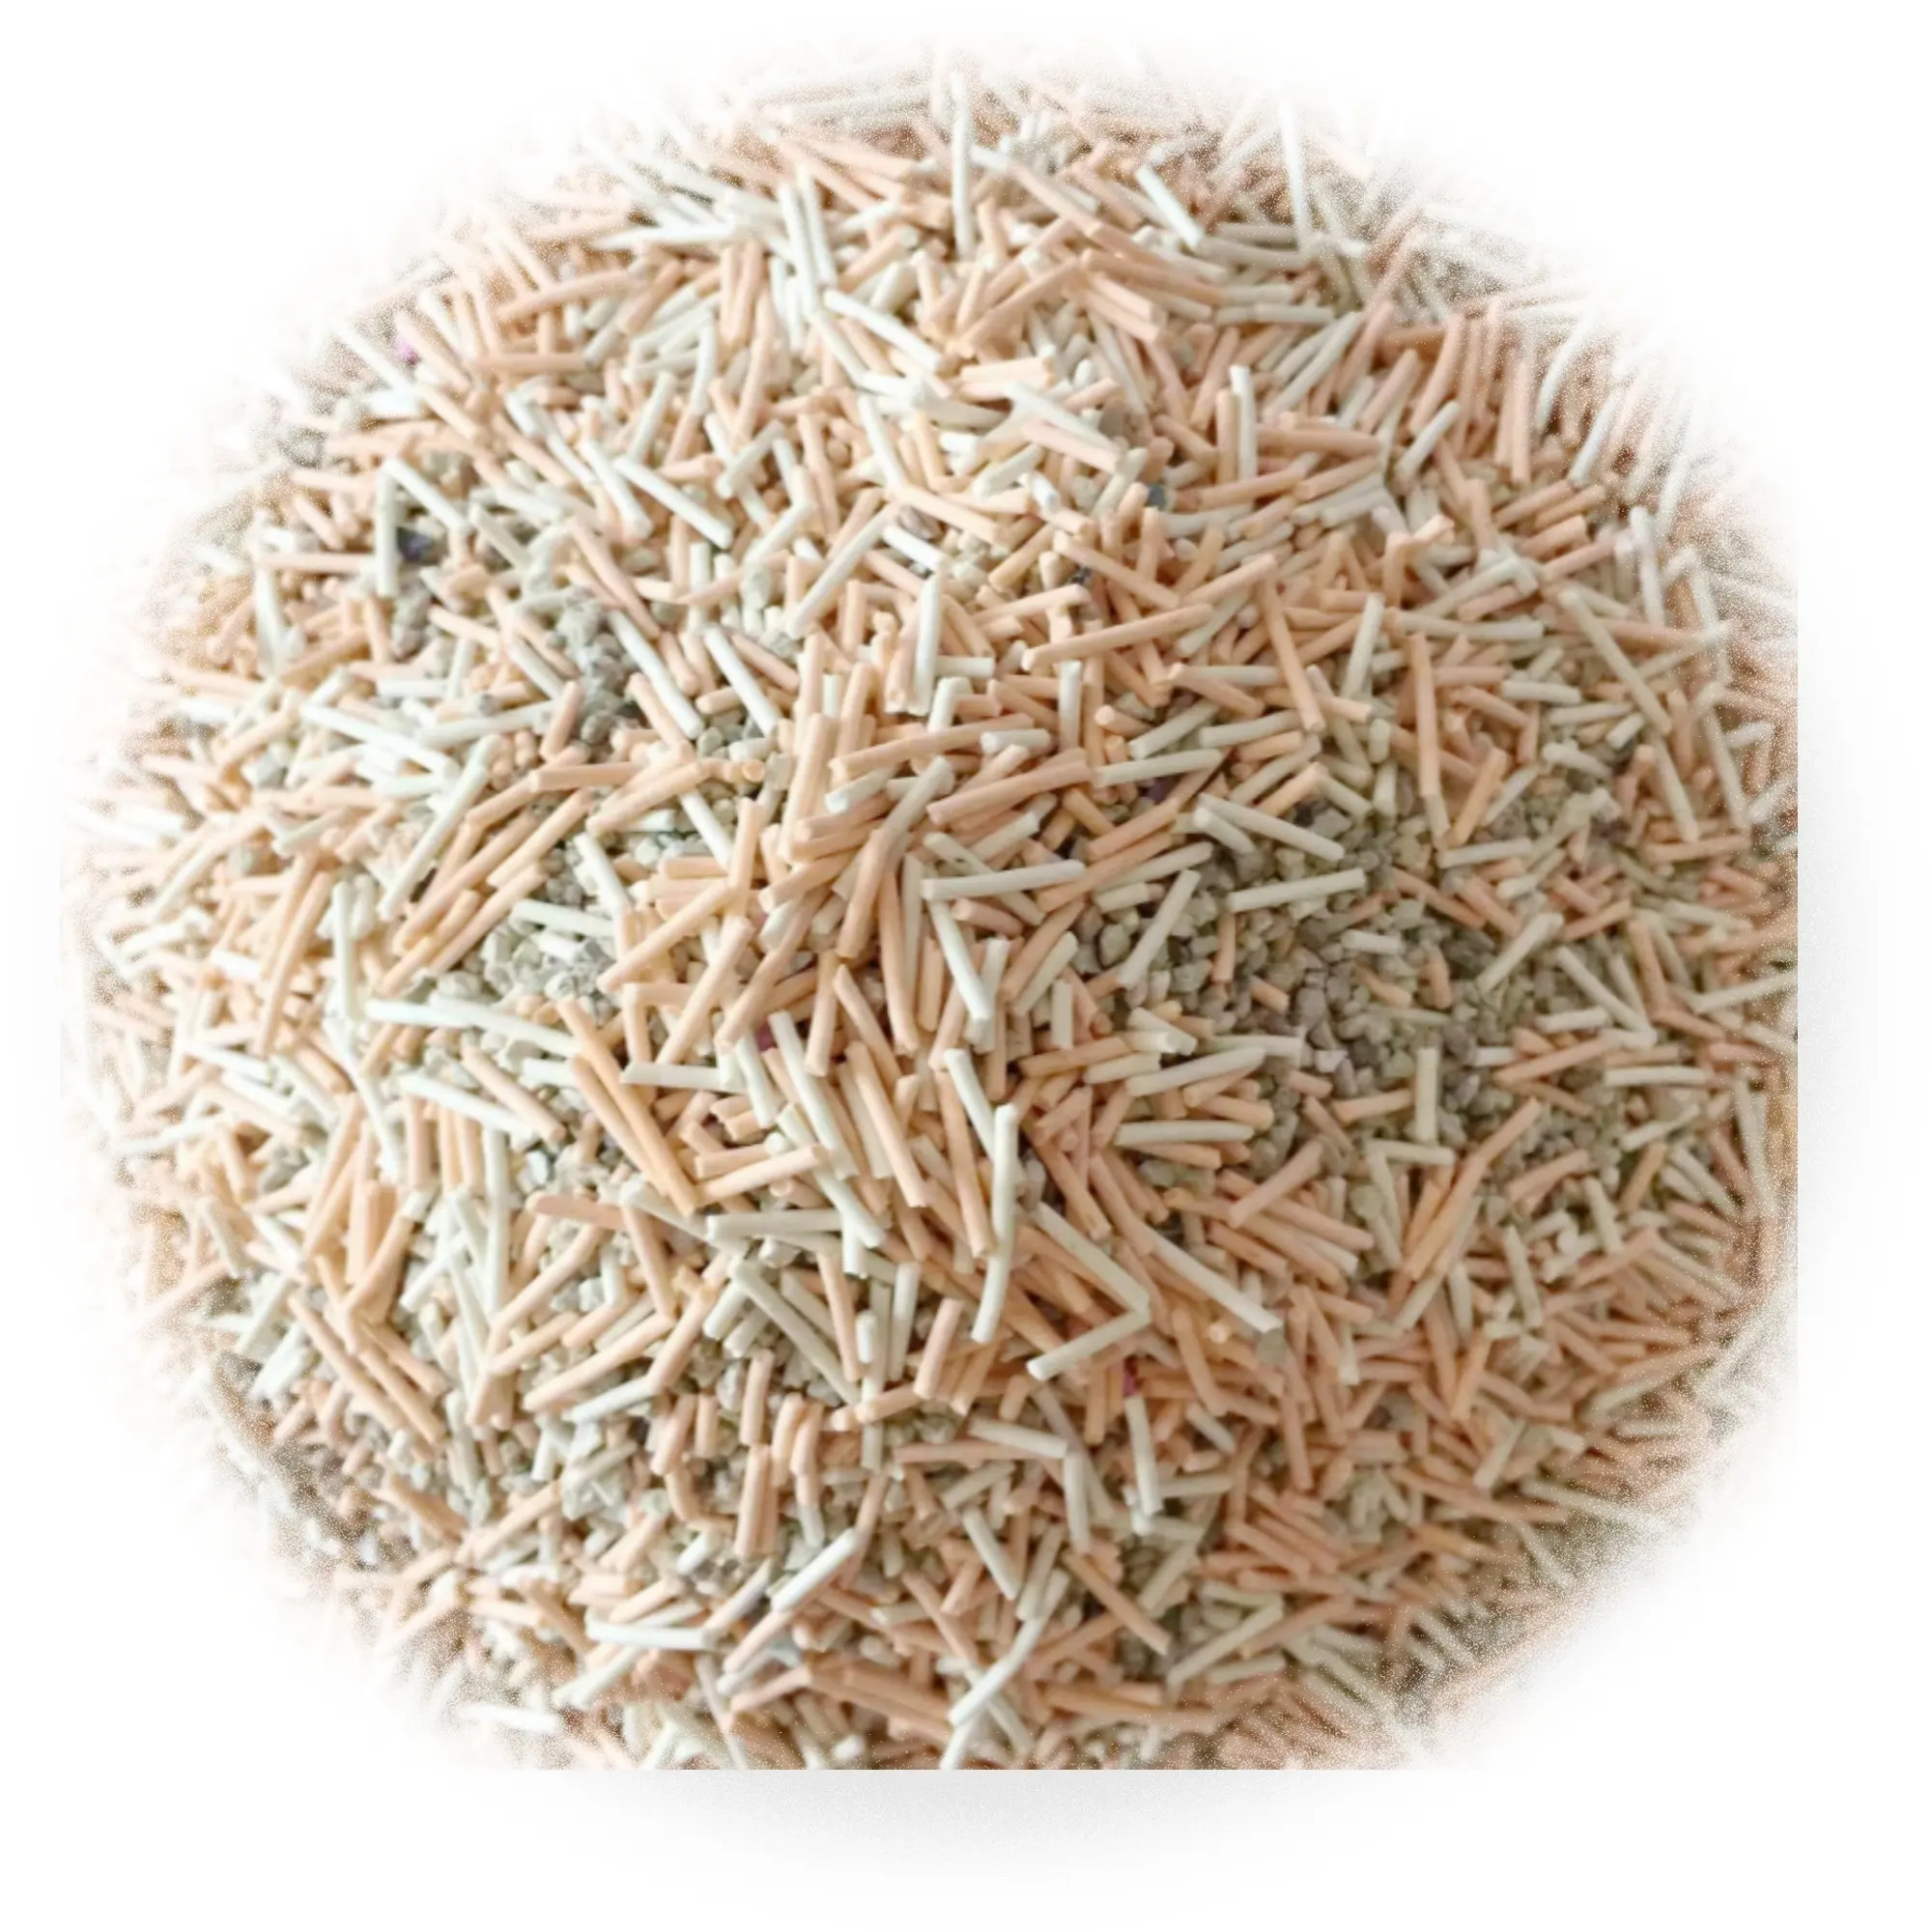 高コスト効率低価格カスタマイズ可能な香りとうふミネラル砂混合猫砂